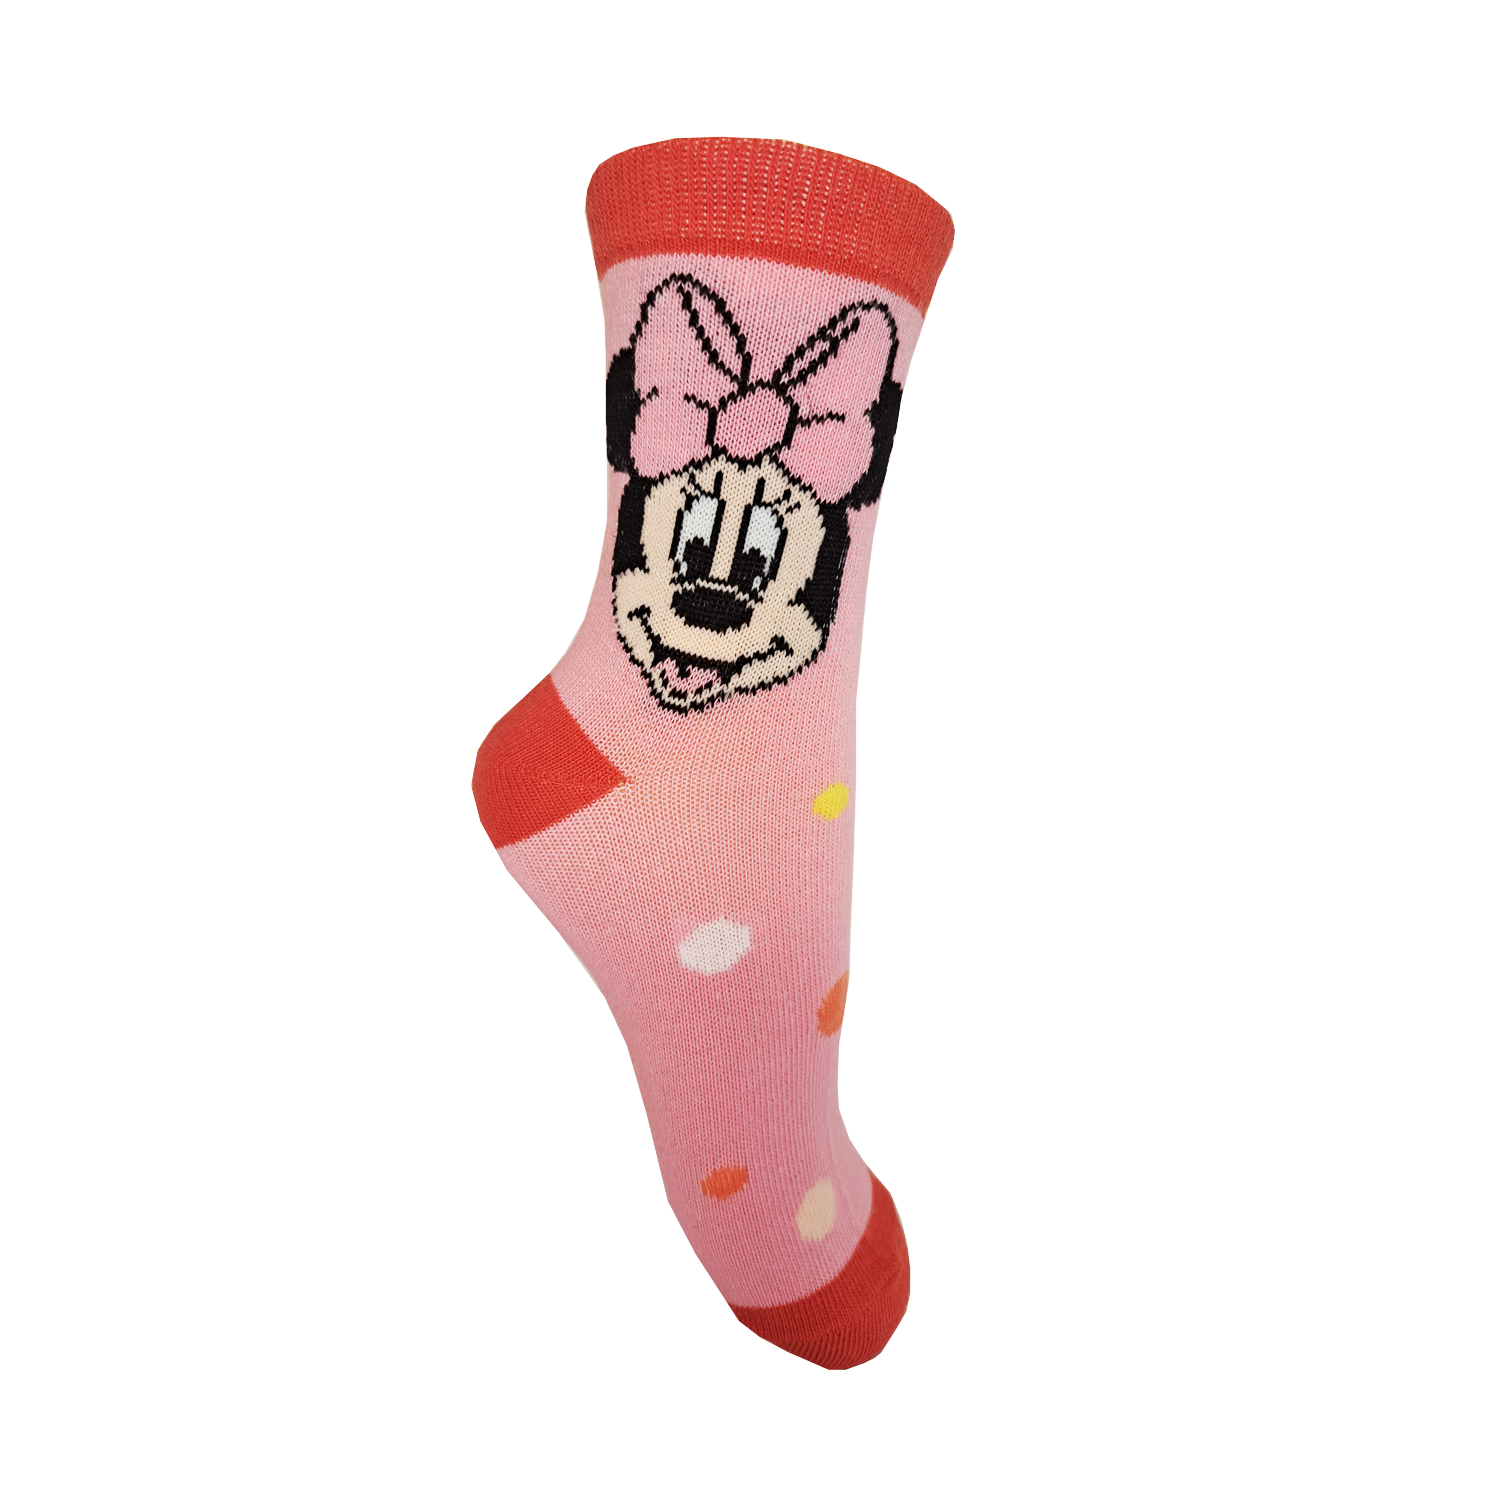 Minnie Mouse - licence Dívčí ponožky - Minnie Mouse 99, růžová Barva: Růžová, Velikost: 23-26